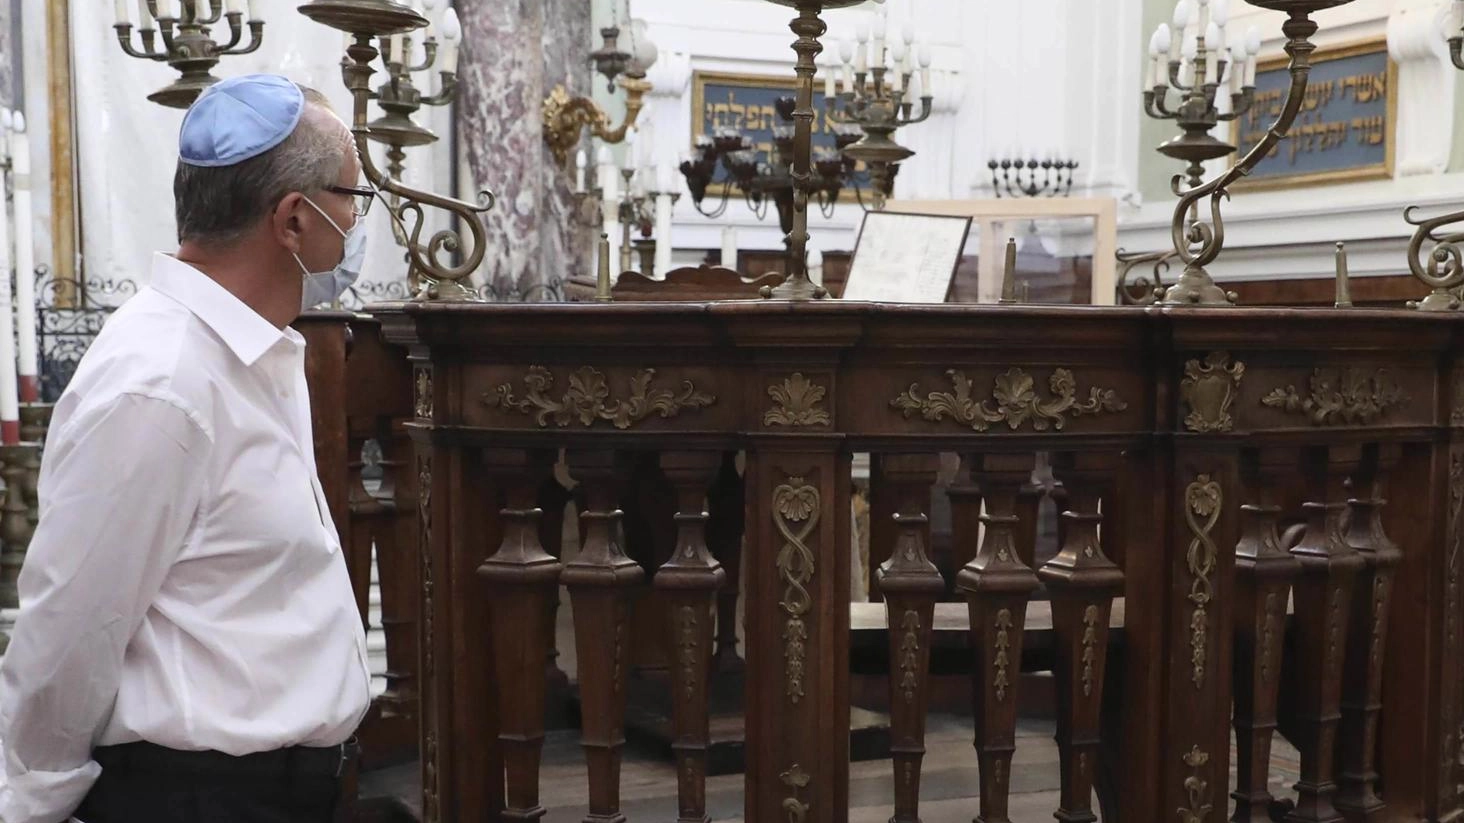 

Raccolta fondi a Siena per la sinagoga: 37 donazioni per 5mila euro